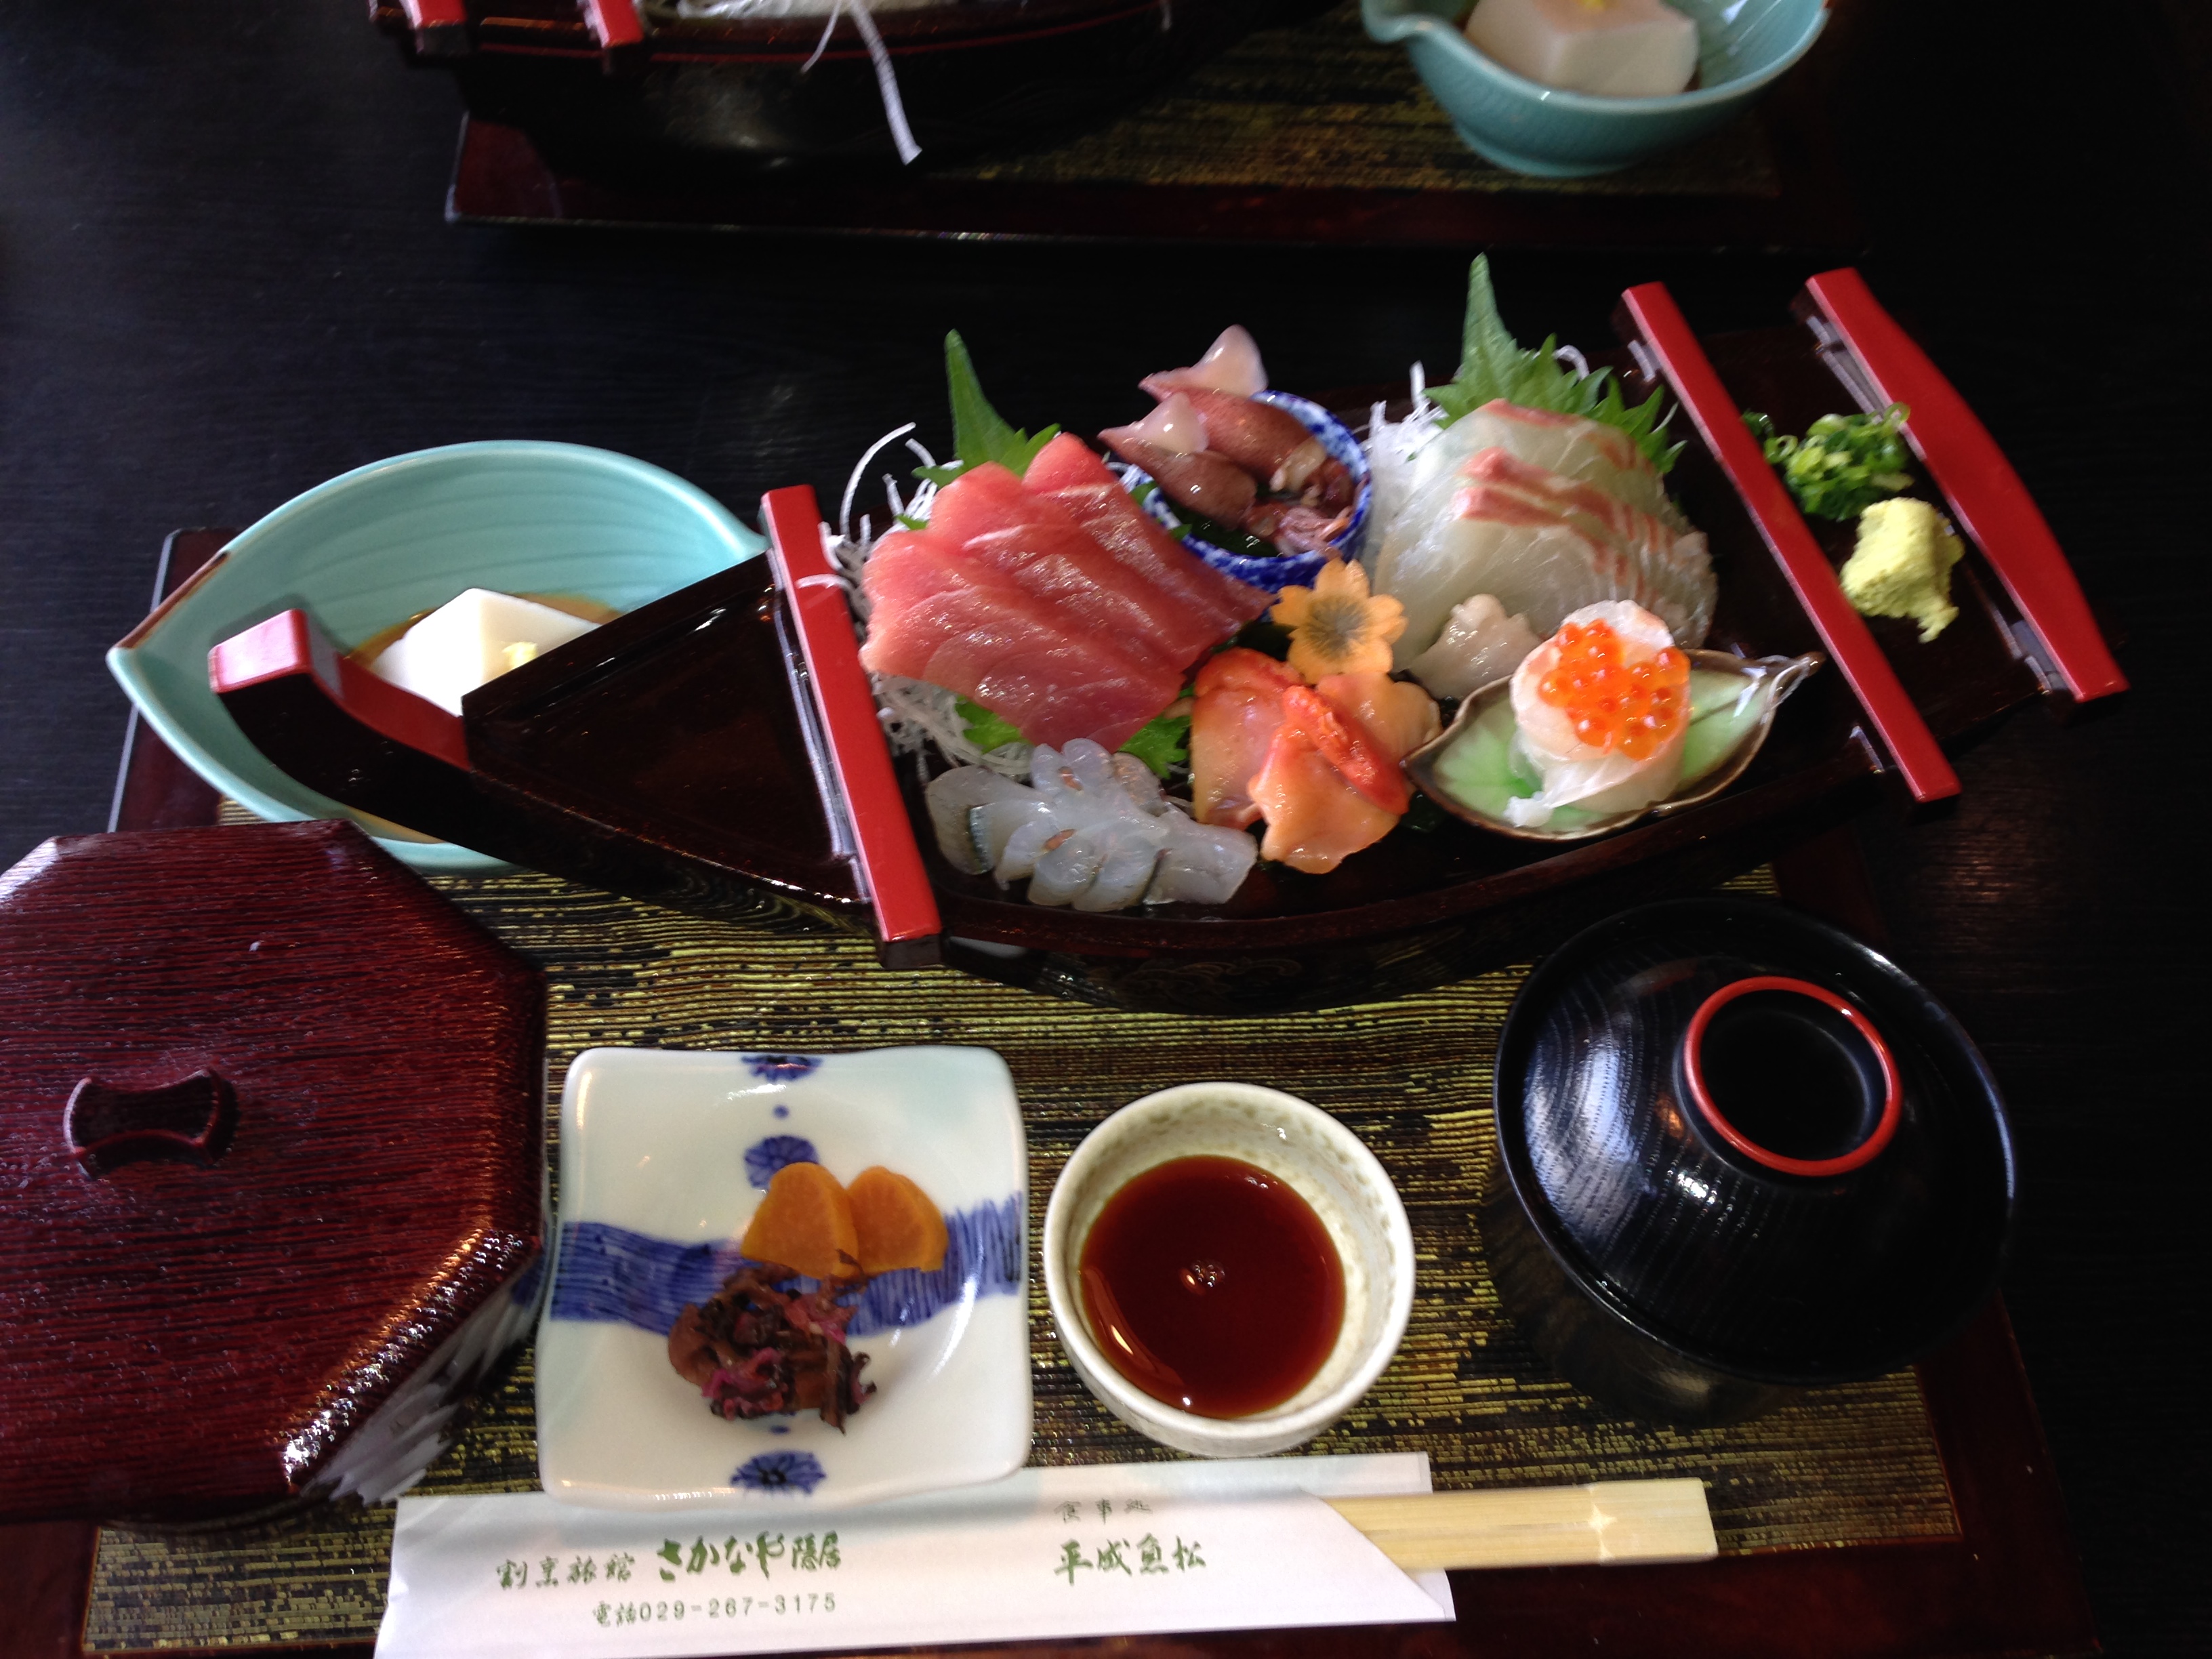 旅館さかなや隠居の付属の鮮魚料理店「平成魚松」の刺身松定食